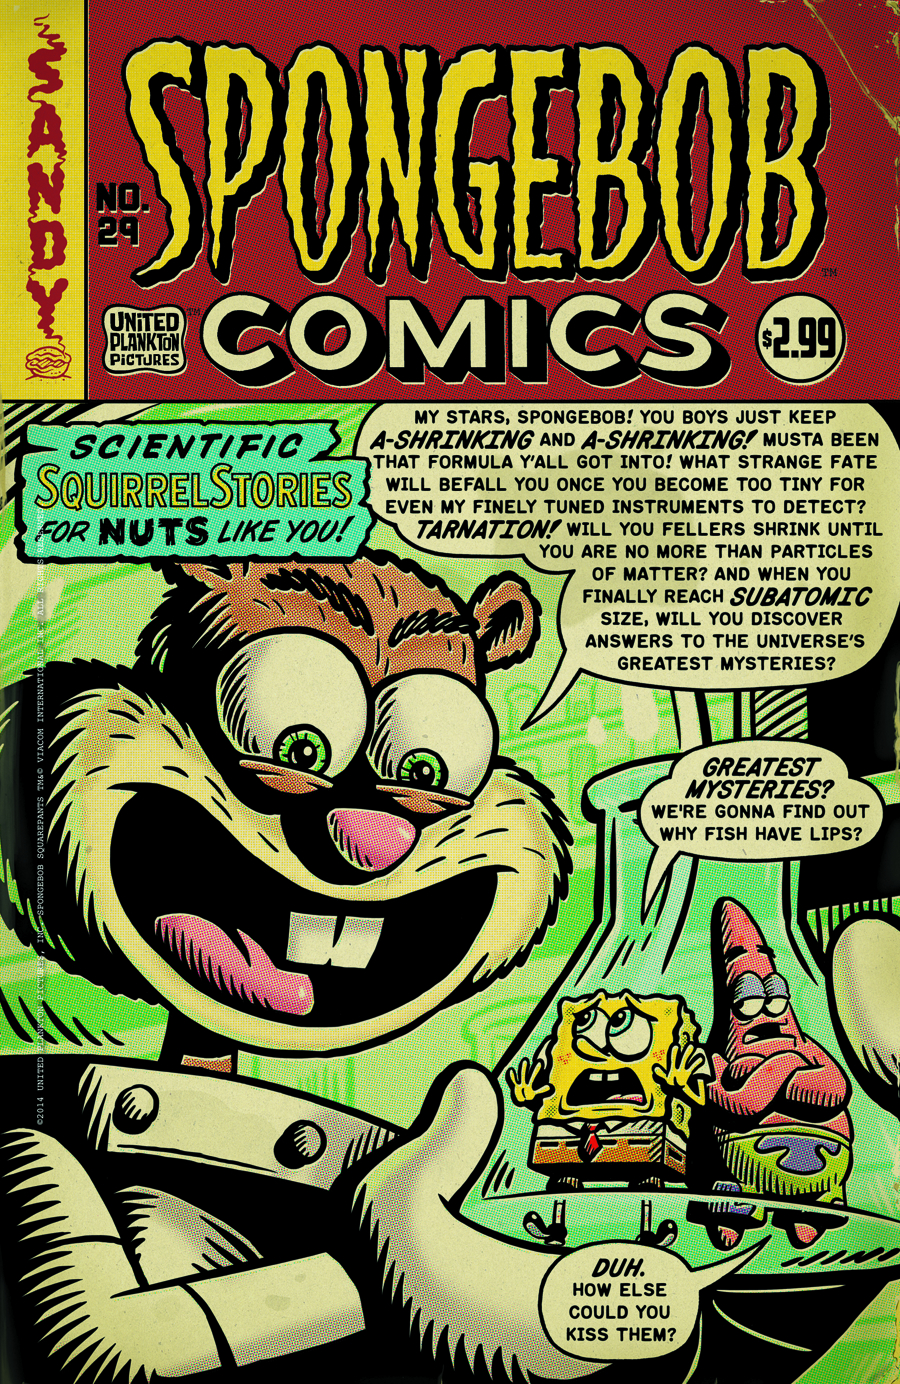 SpongeBob Comics No. 29 - Encyclopedia SpongeBobia - The SpongeBob ...